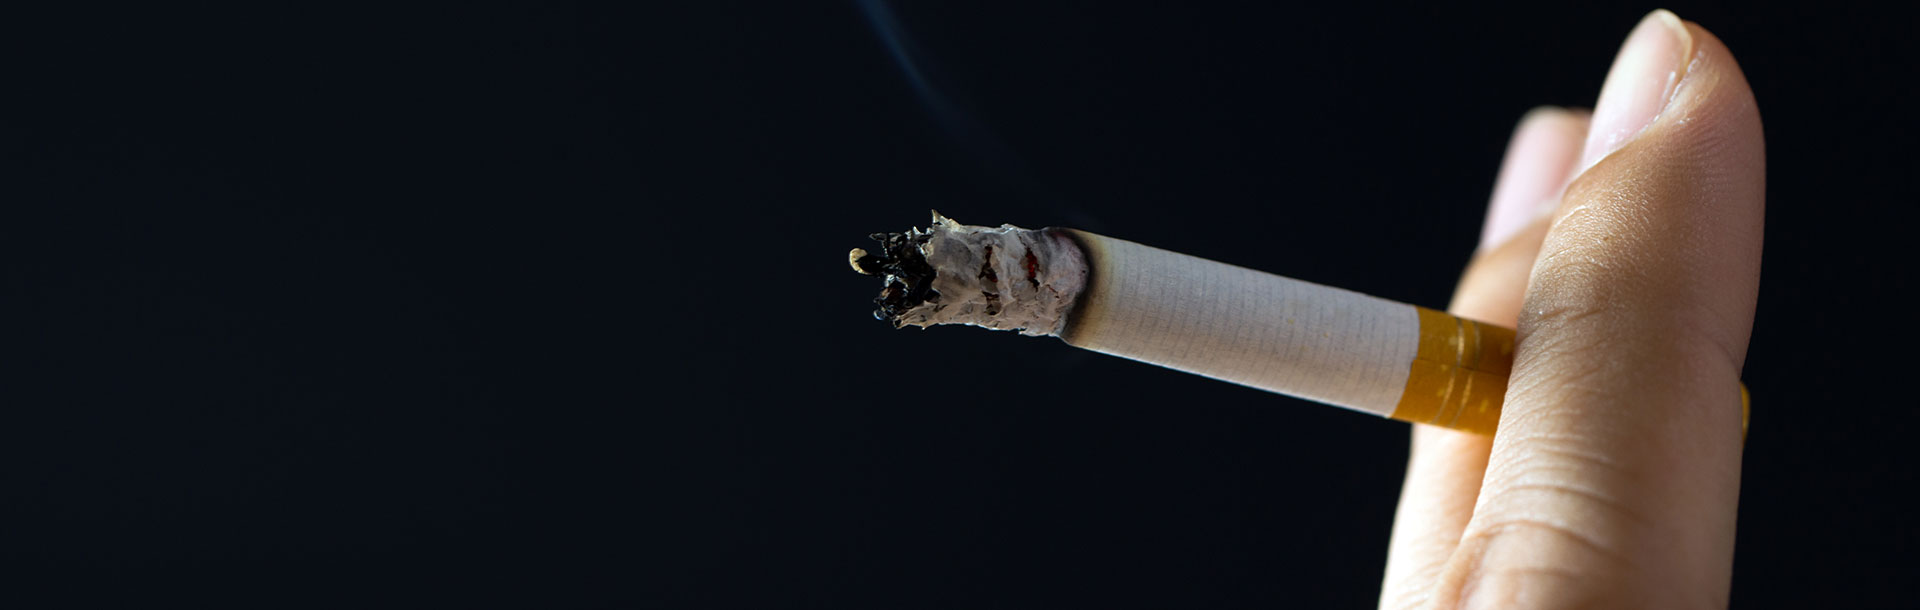 Efectos del tabaco en la hipertensión ar... - Siegfried Rhein Sigfrid